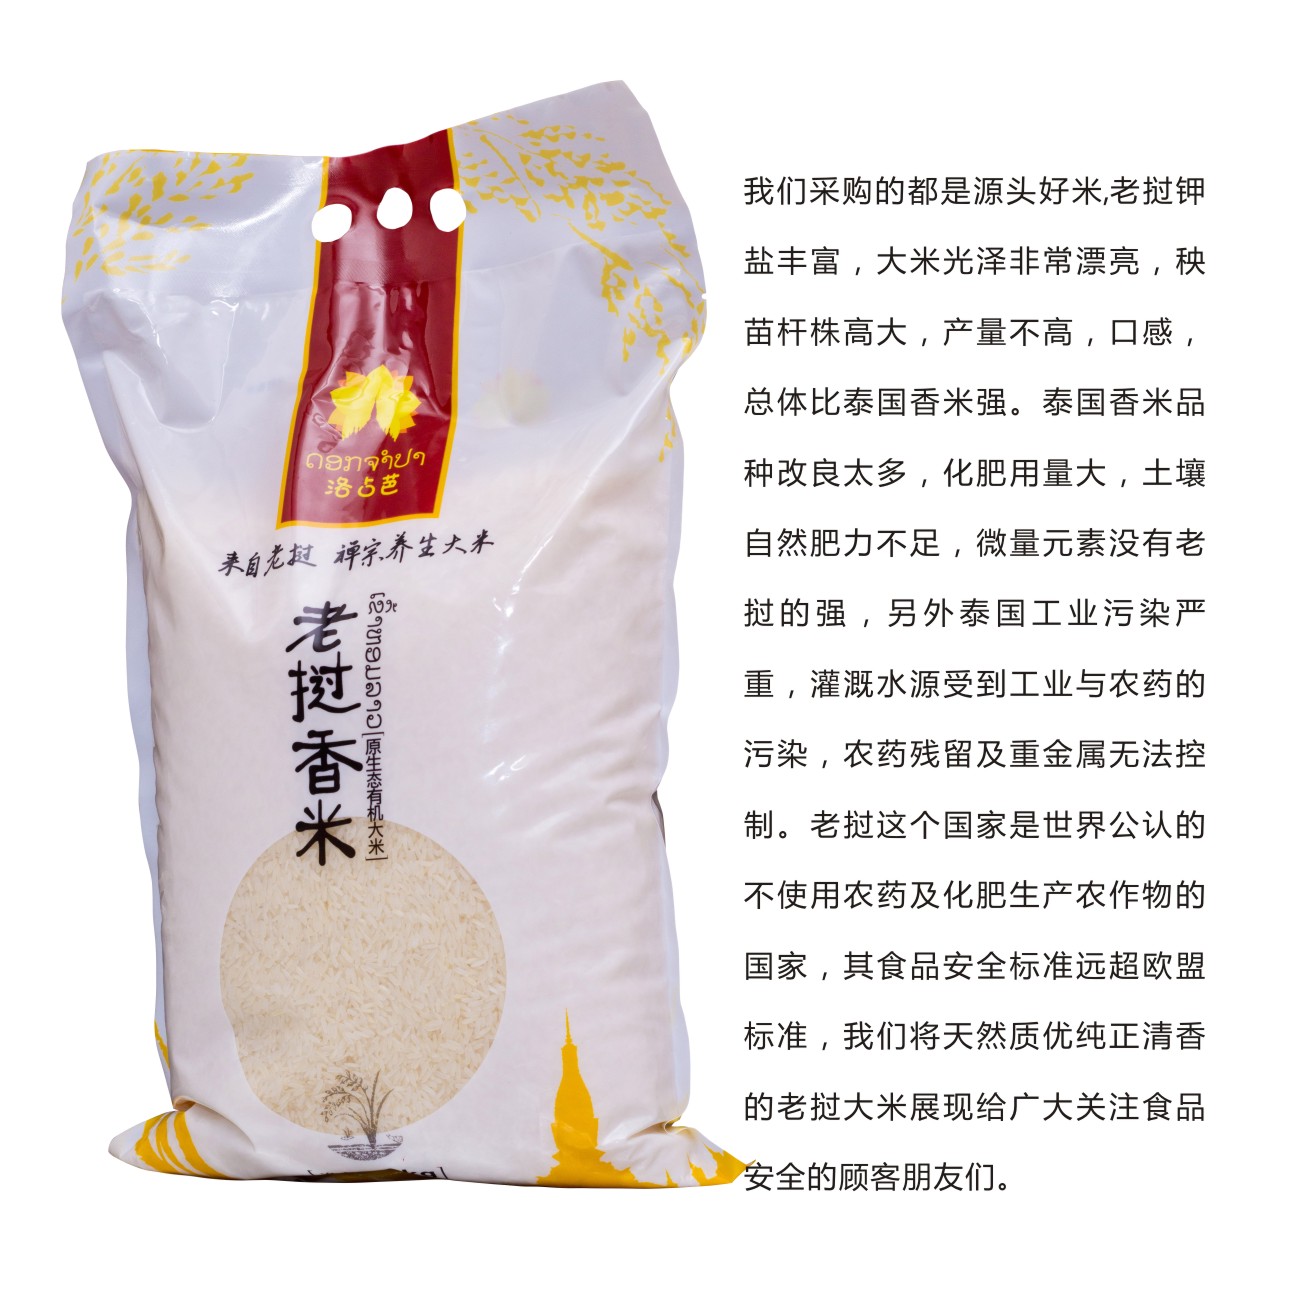 老挝大米直供进口大米原生态有机大米非转基因无农药残留5kg包邮